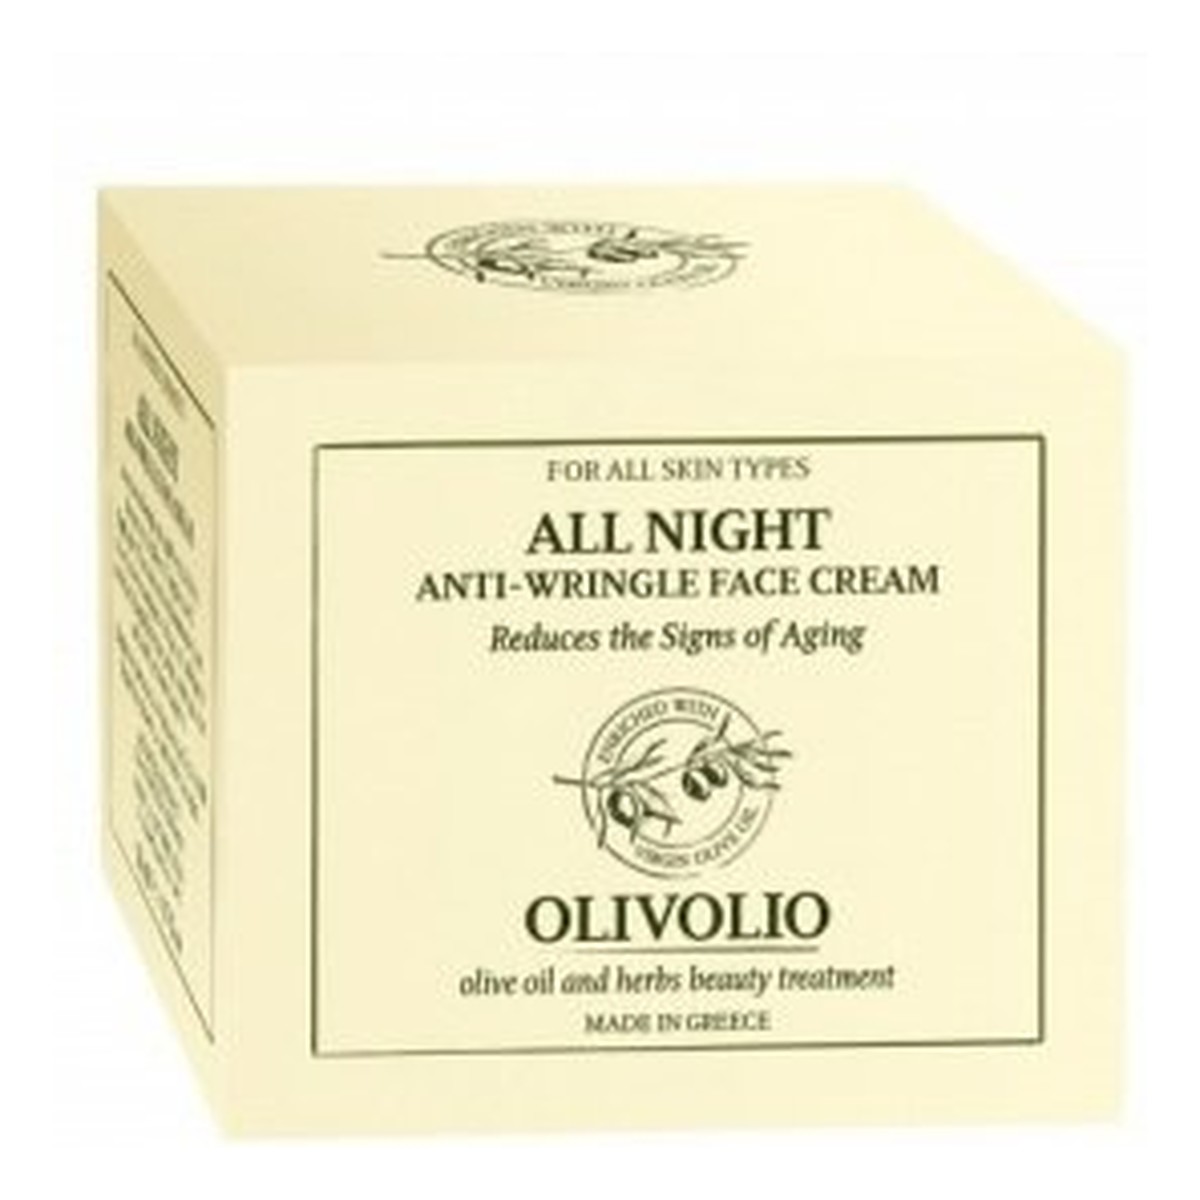 Olivolio All Night Anti-Wrinkle Face Cream Przeciwzmarszczkowy krem do twarzy na noc z organiczną oliwą z oliwek 50ml